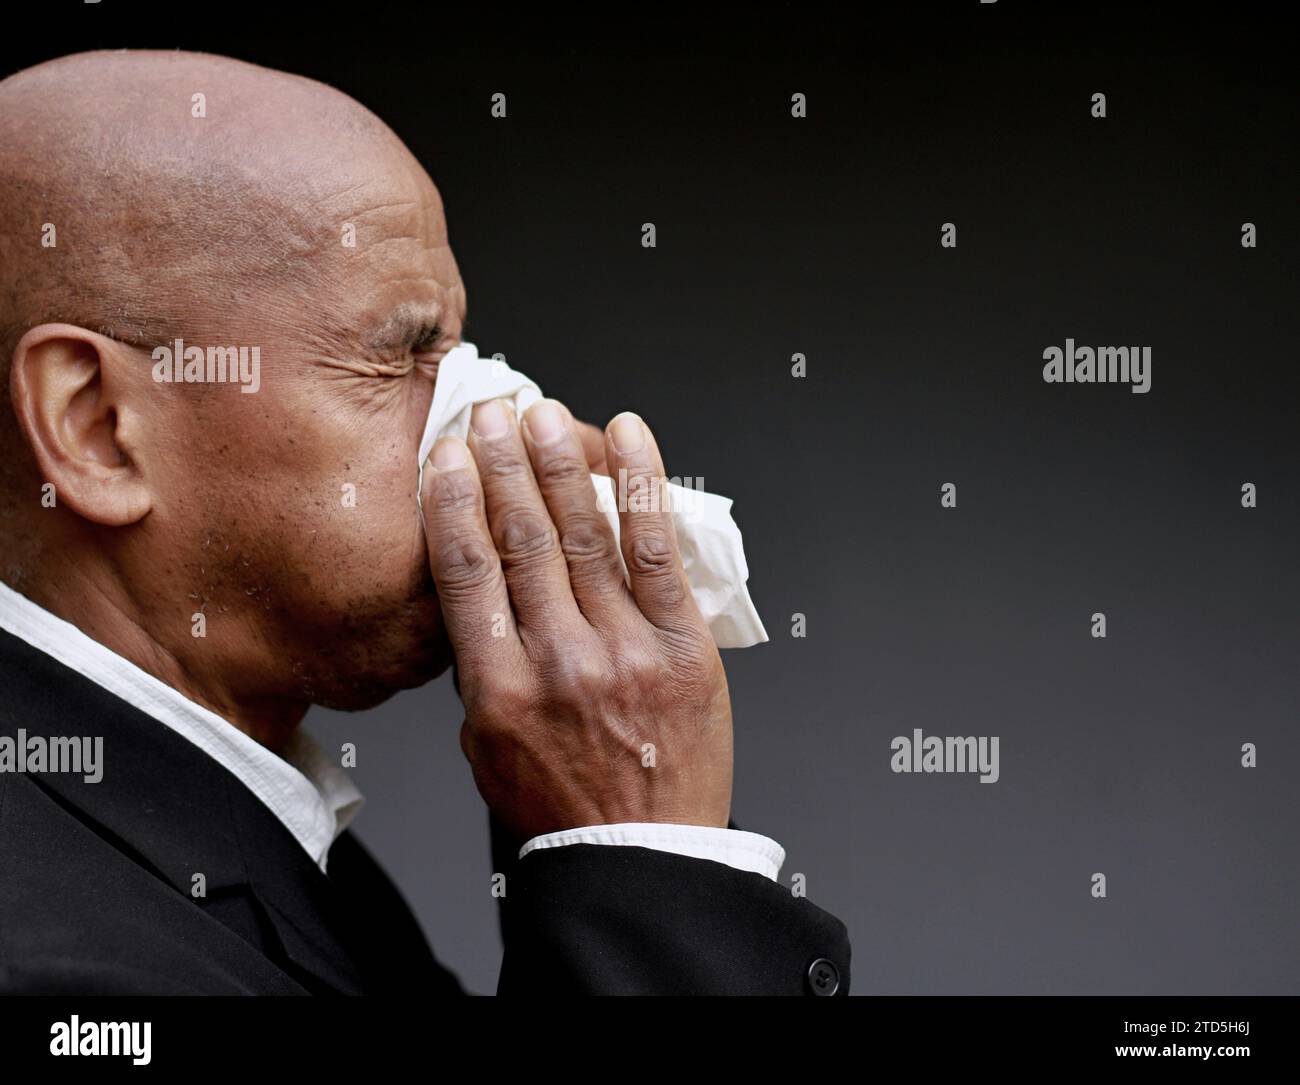 homme attrapant le rhume et la grippe homme soufflant le nez après avoir attrapé un rhume avec fond gris avec des gens photo stock Banque D'Images